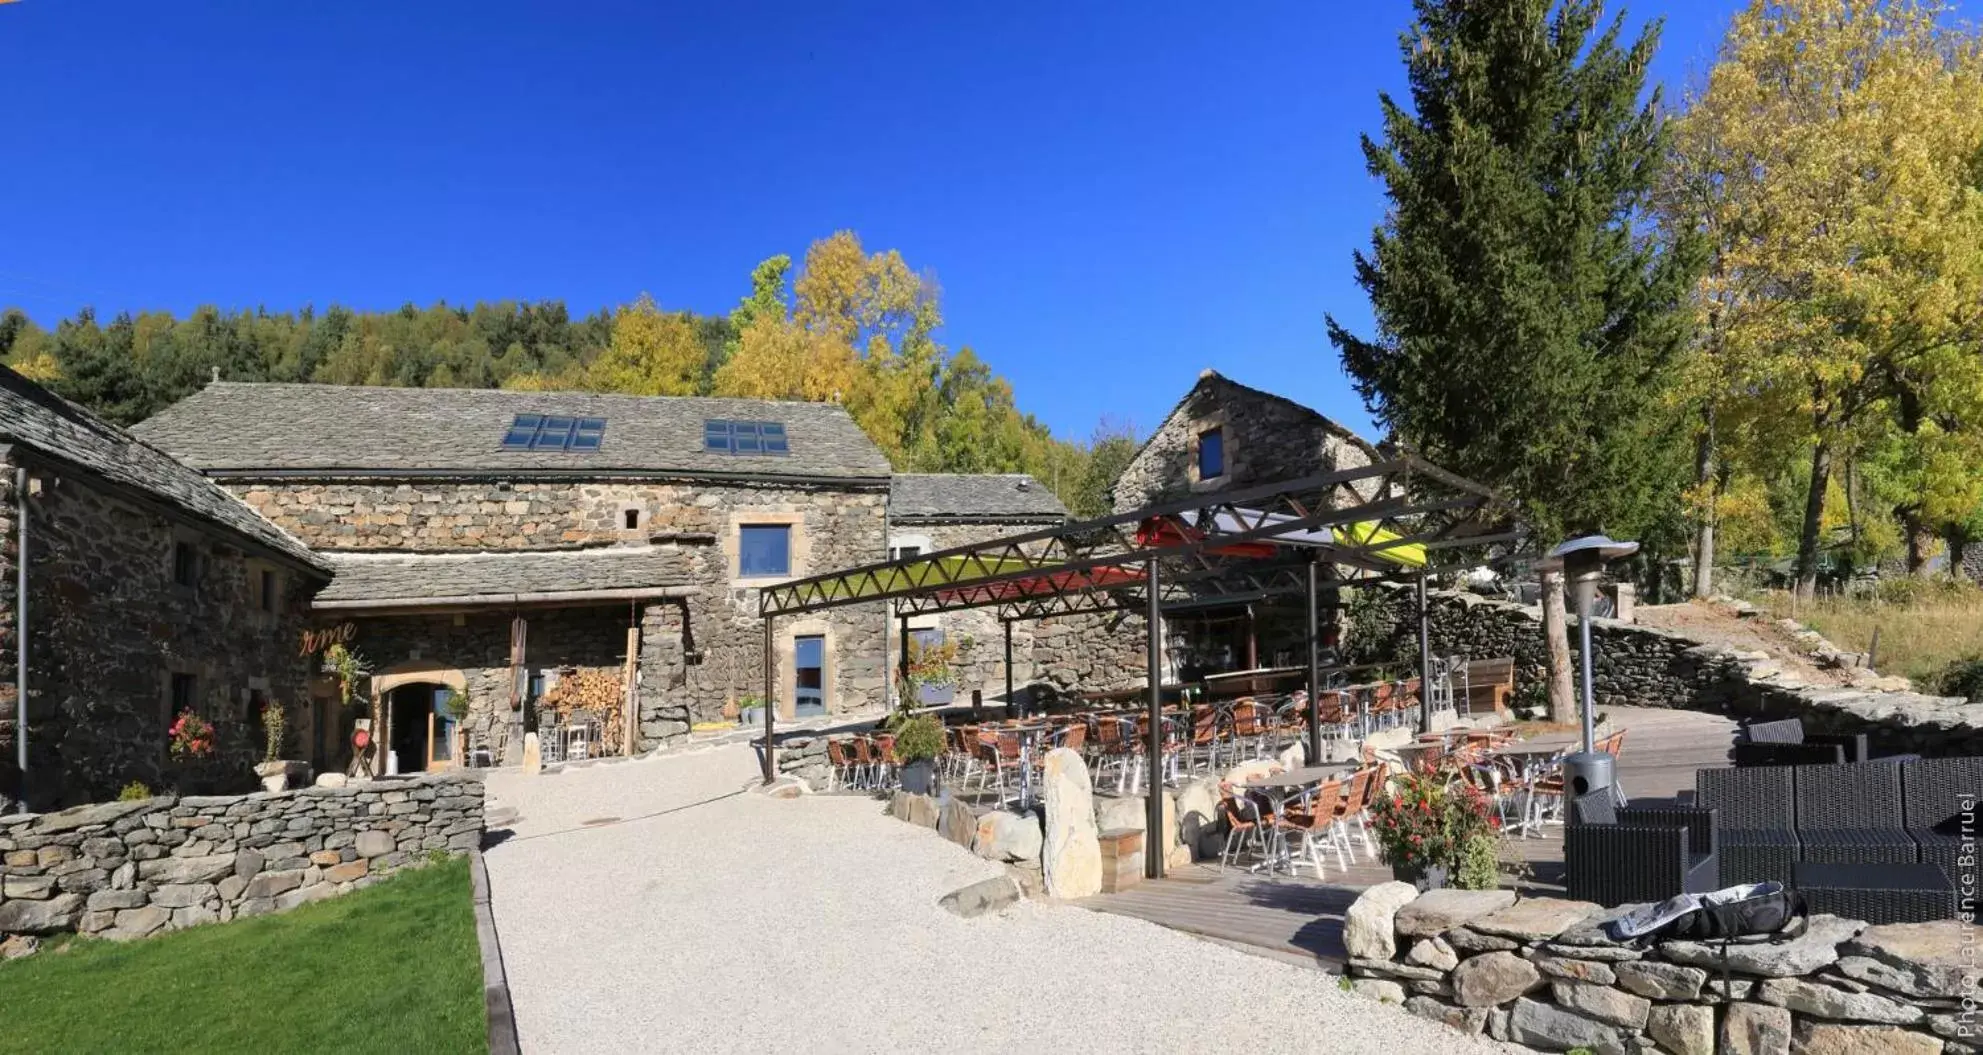 Restaurant/places to eat, Property Building in La Ferme du Bien-etre